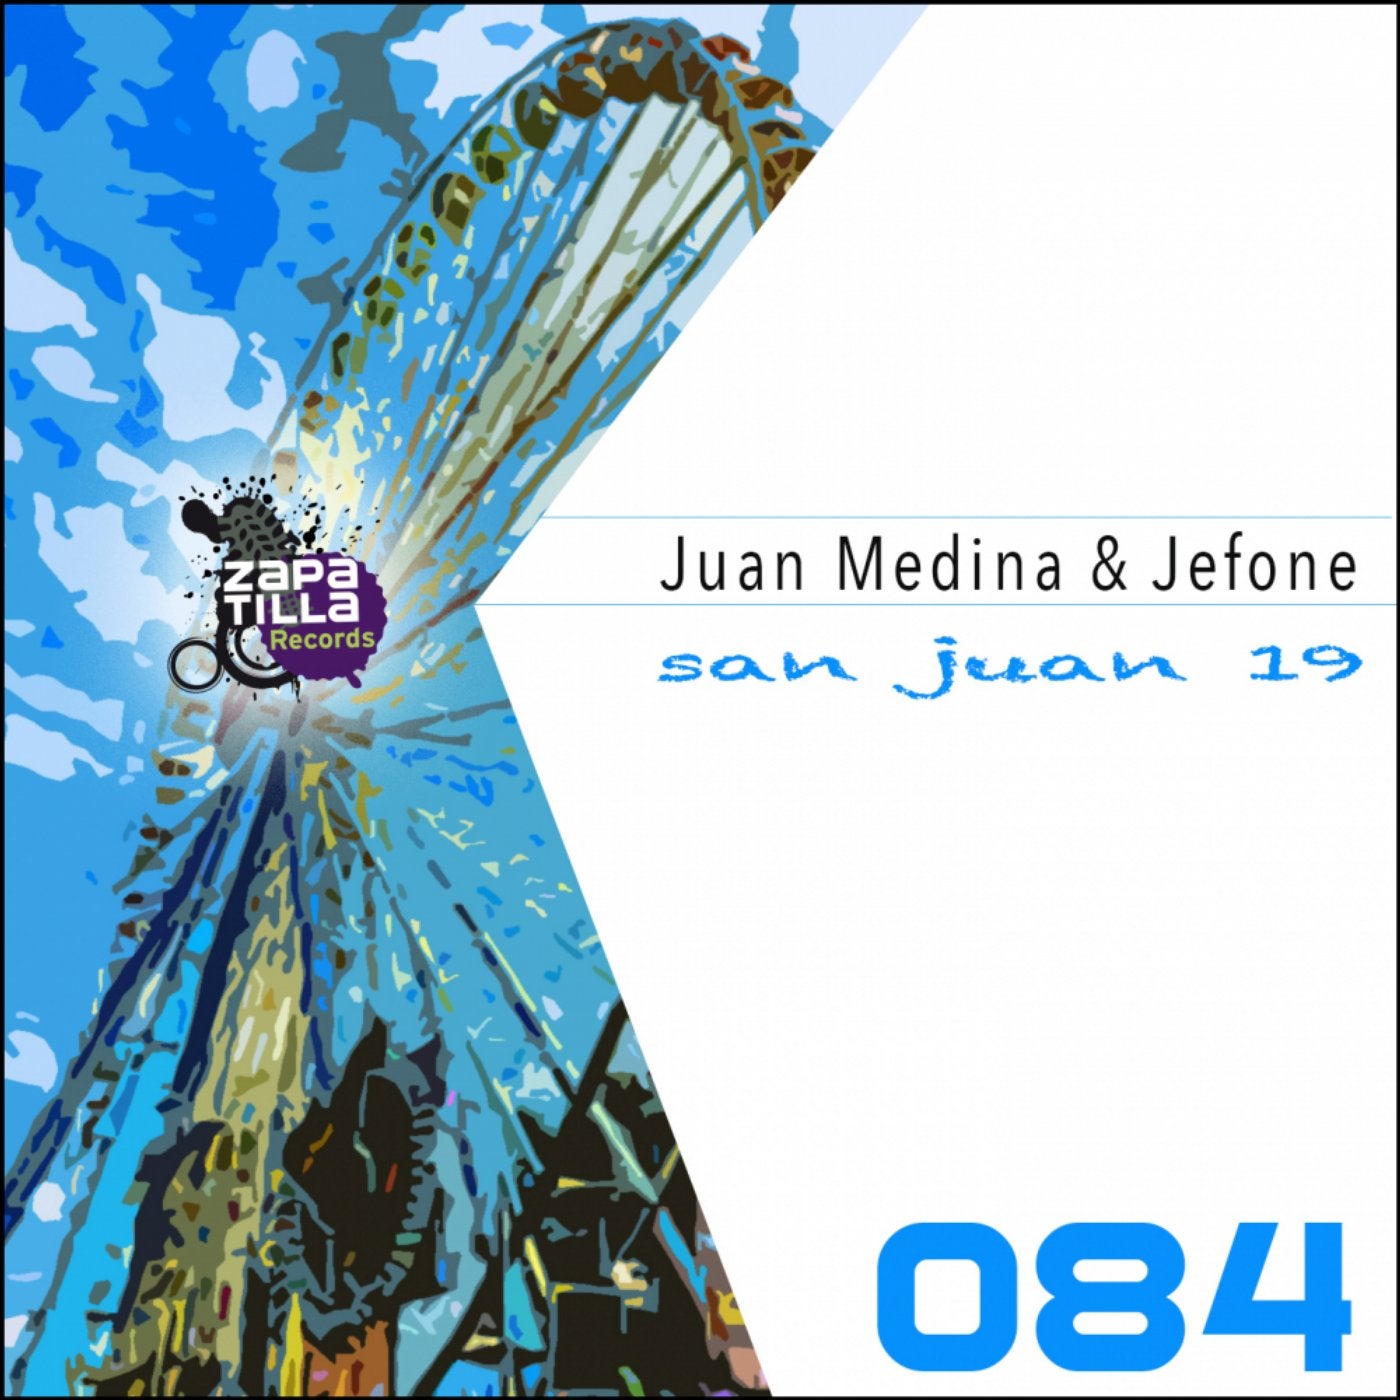 San Juan 19